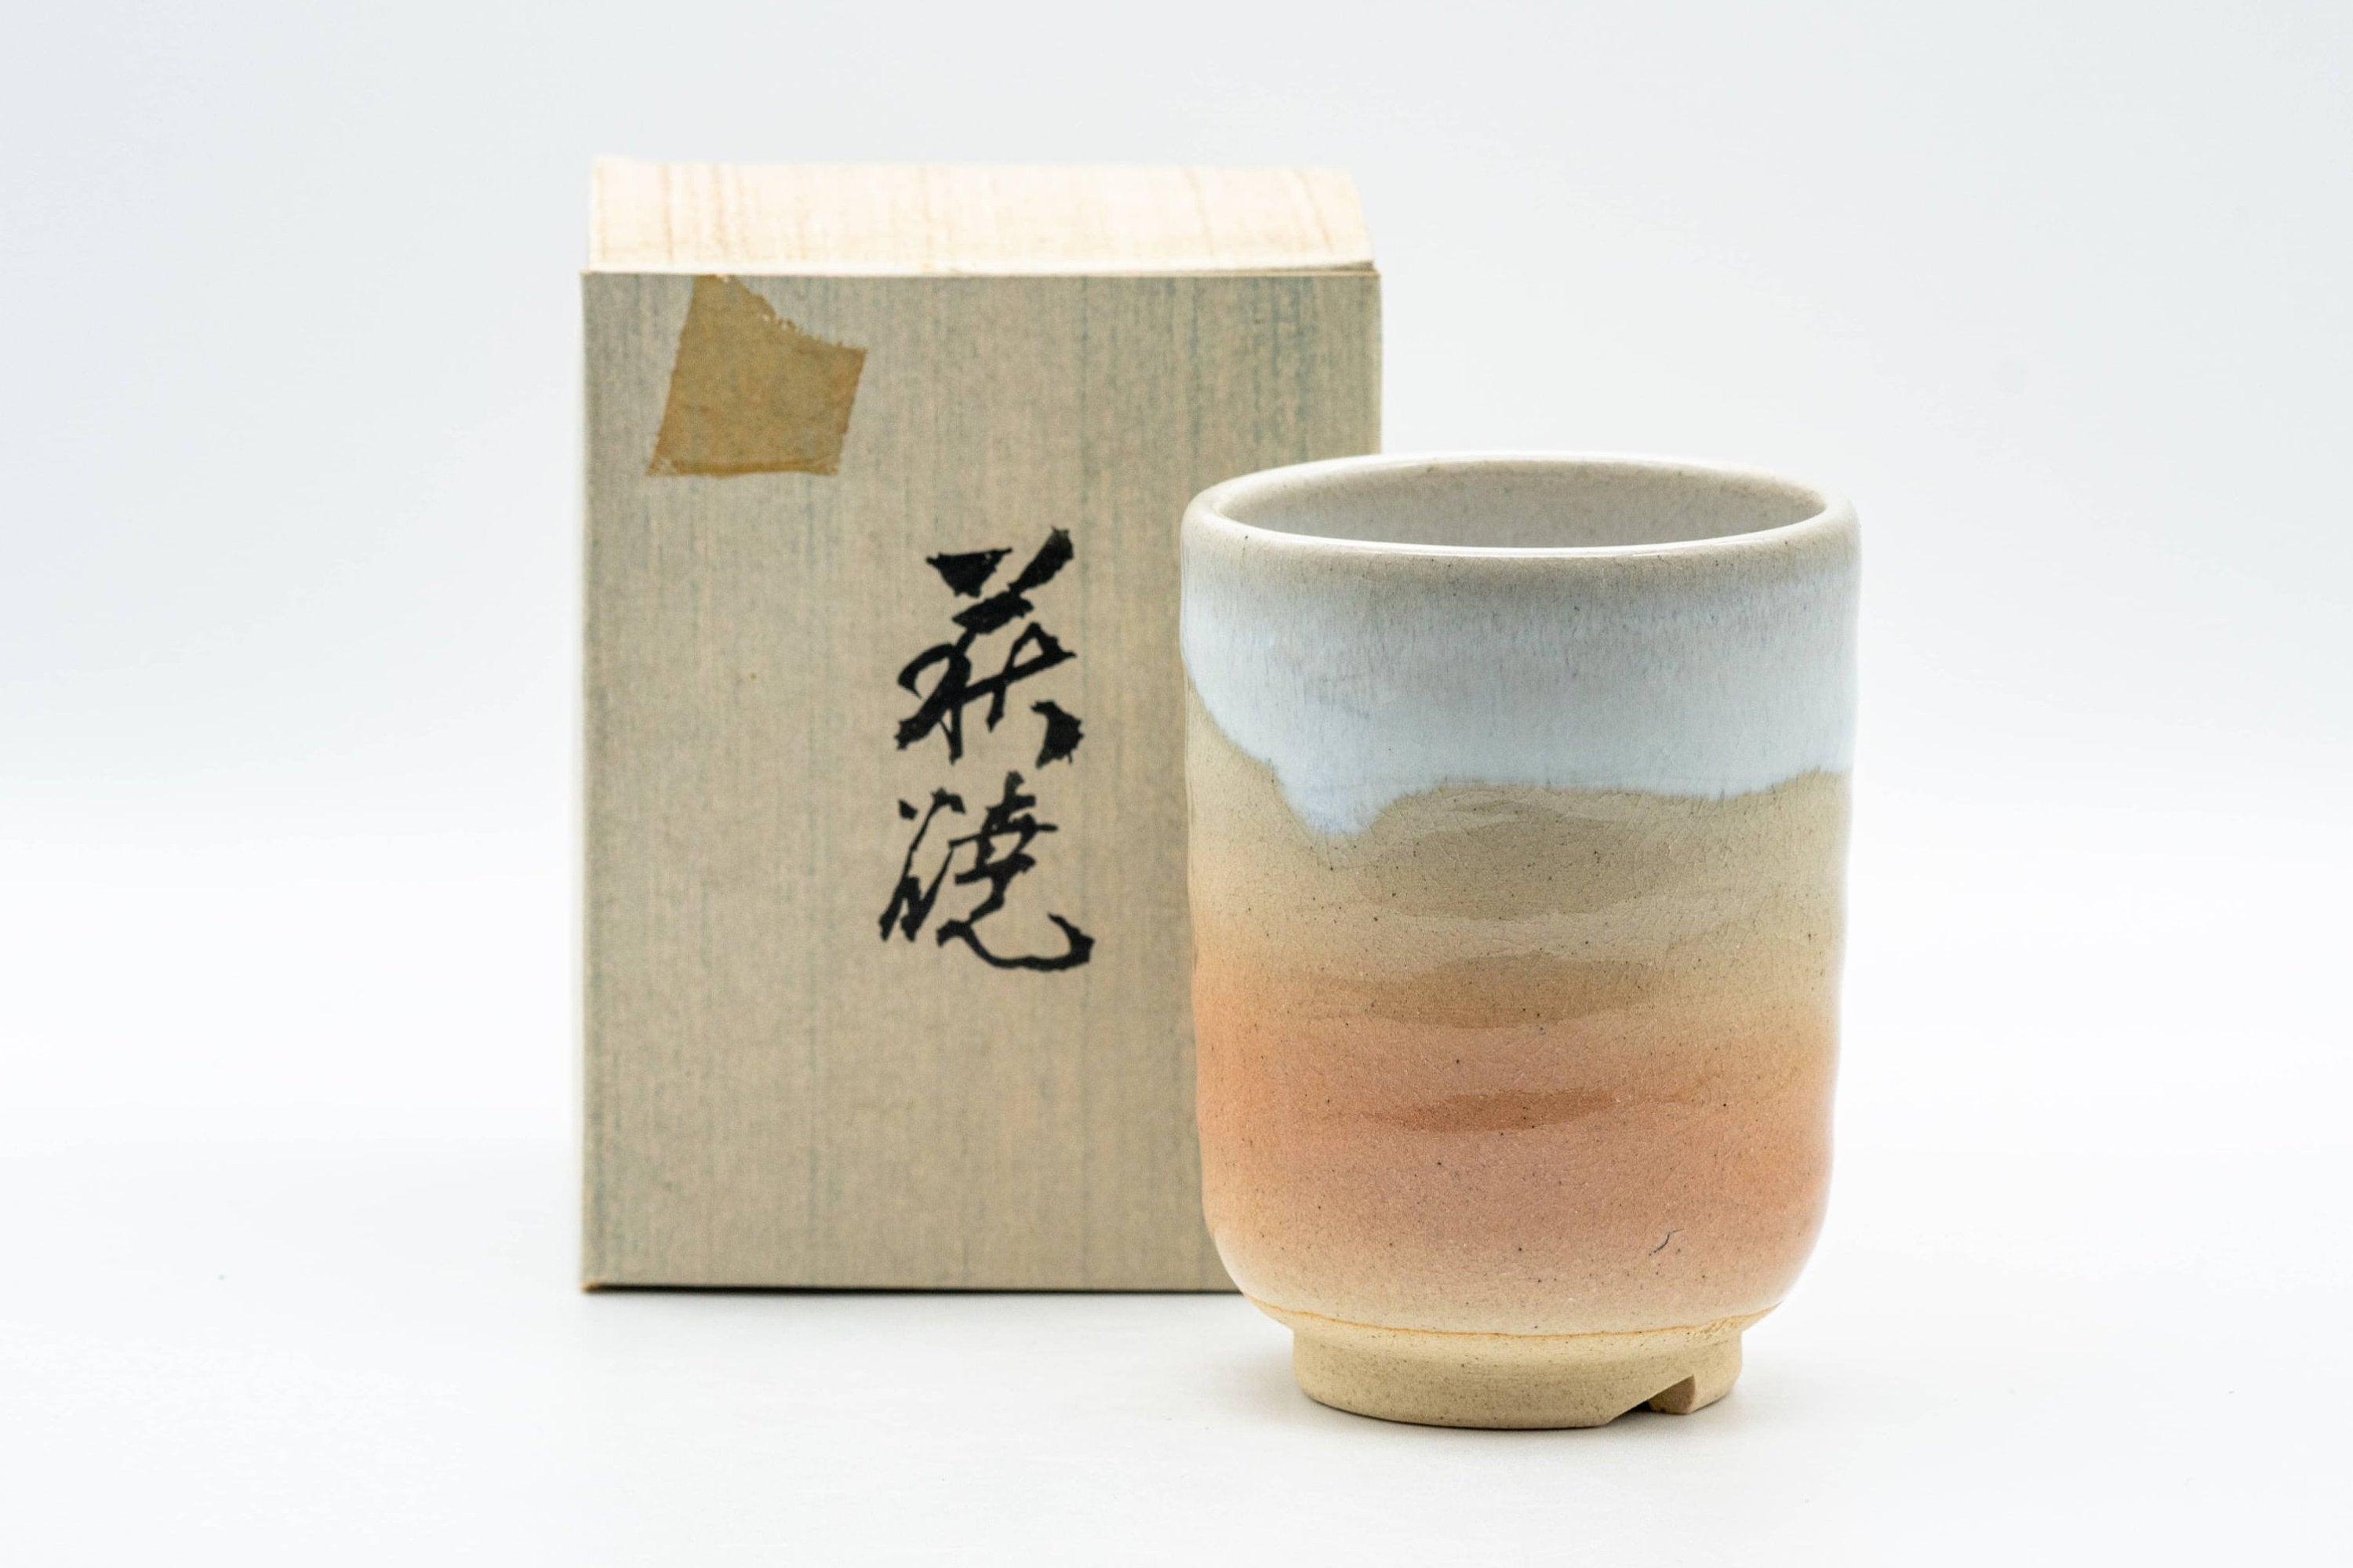 Japanese Teacup - 萩殿窯 Hagiden Kiln Hagi-yaki Yunomi - 140ml